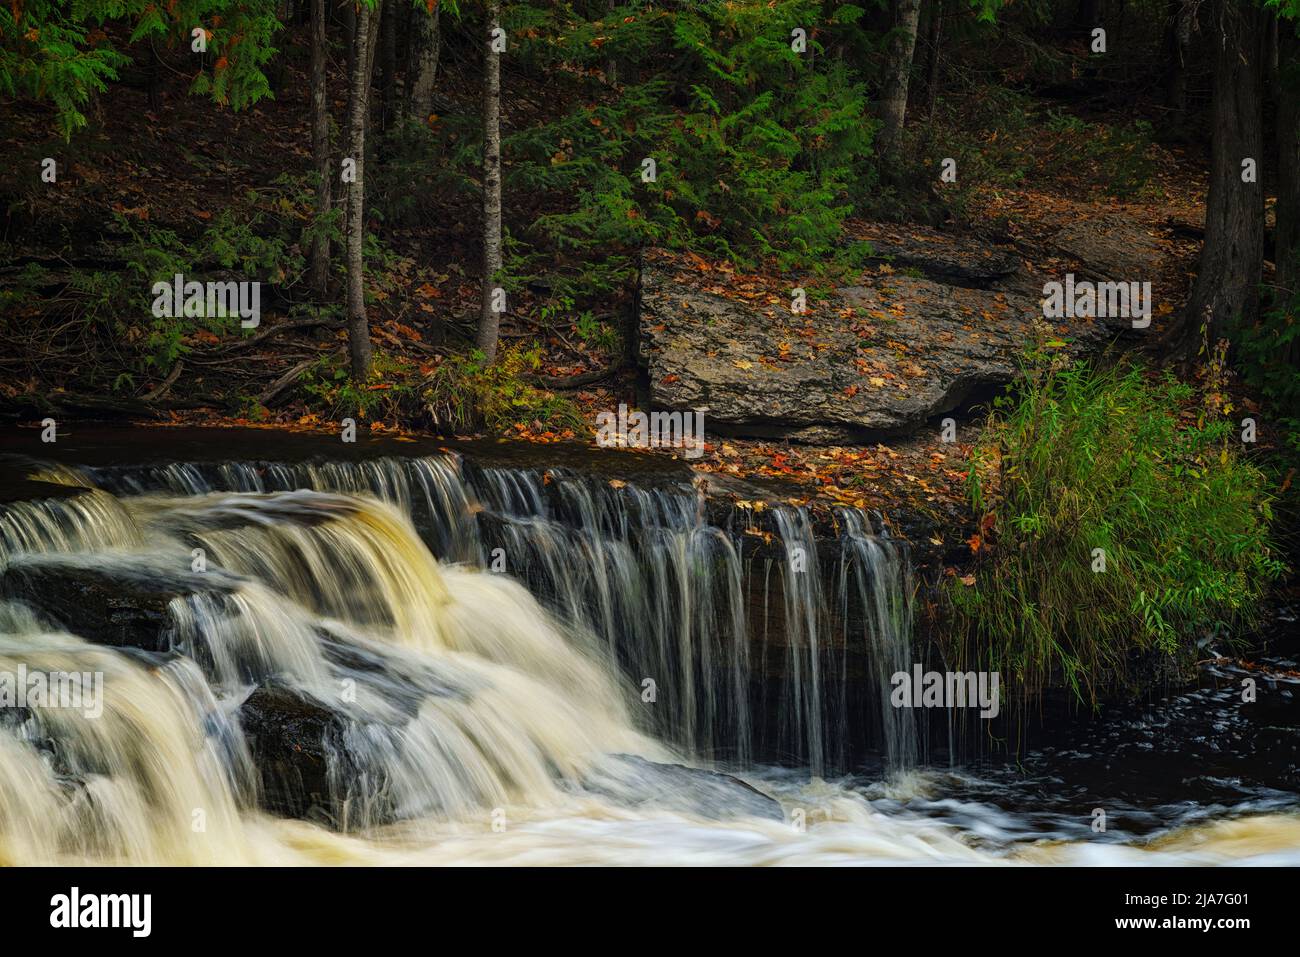 Whitefish Falls near Trenary, Michigan Stock Photo